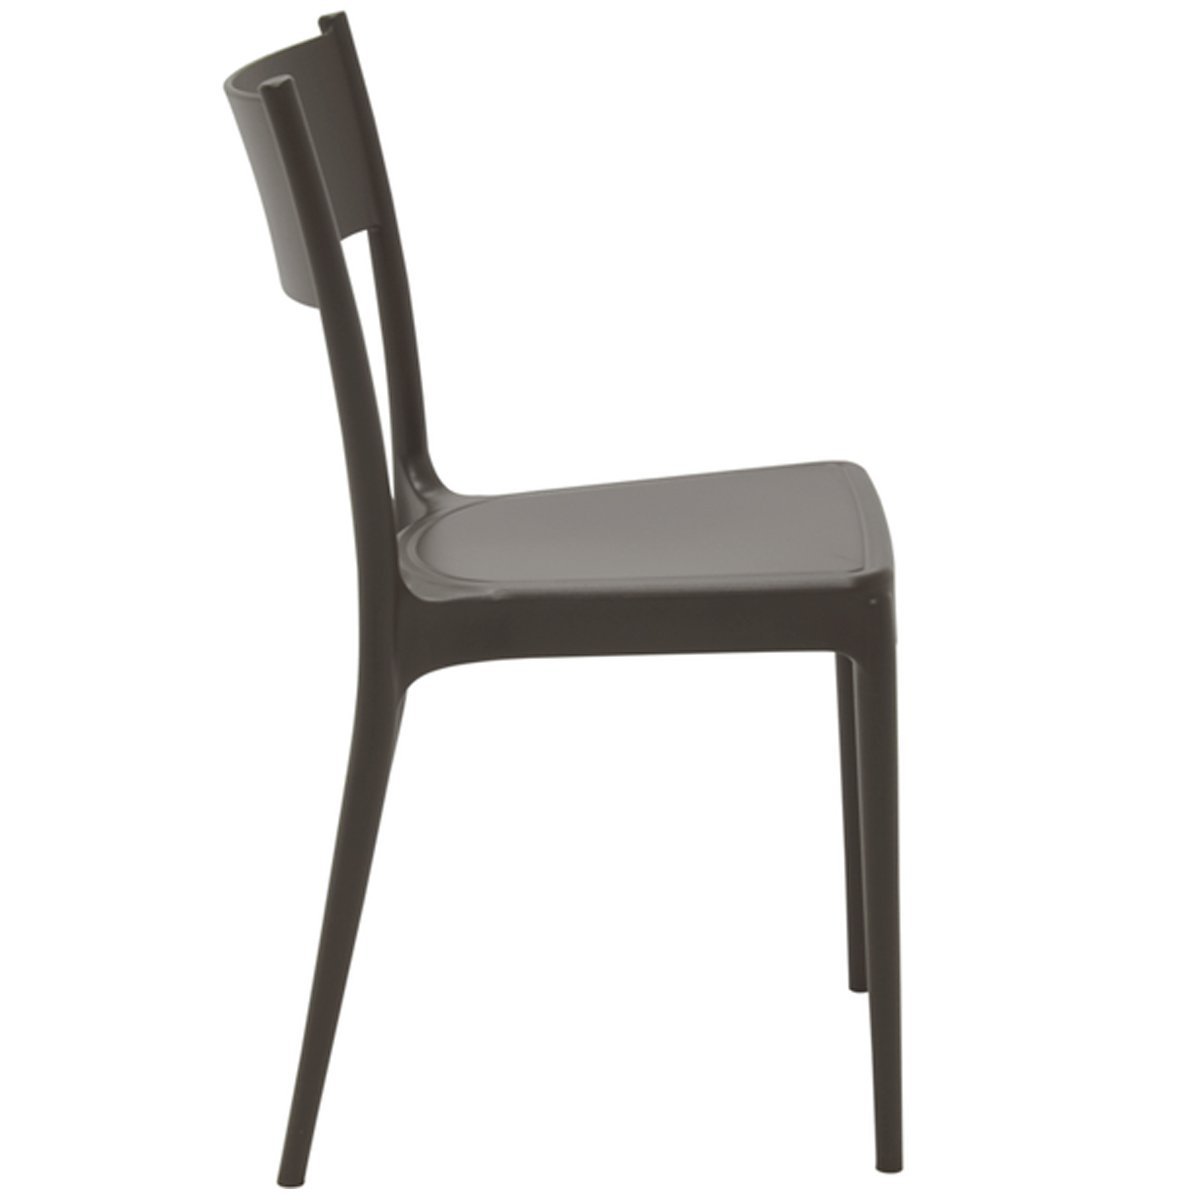 Conjunto 4 Cadeiras de Polipropileno e Fibra de Vidro Summa Eco Diana - Tramontina - Marrom 92030/41 - 3